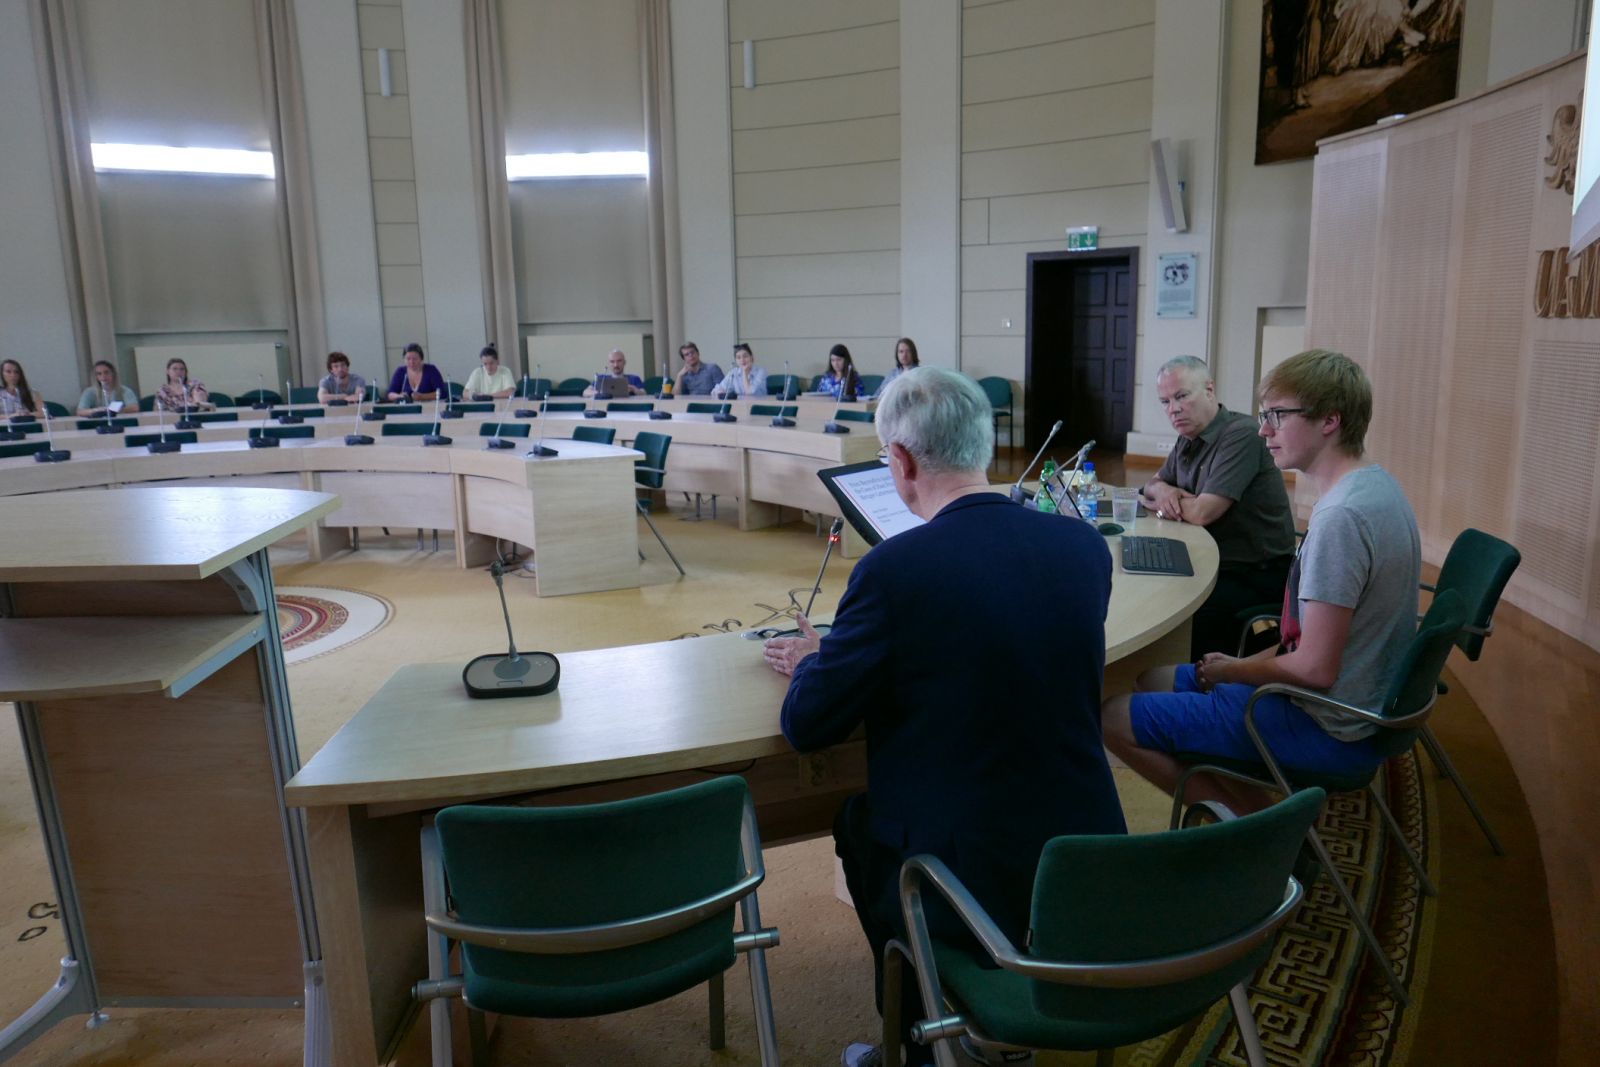 Za stołem prezydialnym w Salonie Mickiewicza siedzą: prof. Krzysztof Kozłowski, młody mężczyzna oraz prof. Anno Mungen. Zdjęcie zrobiono zza ich pleców, w tle widać słuchaczy wykładu.